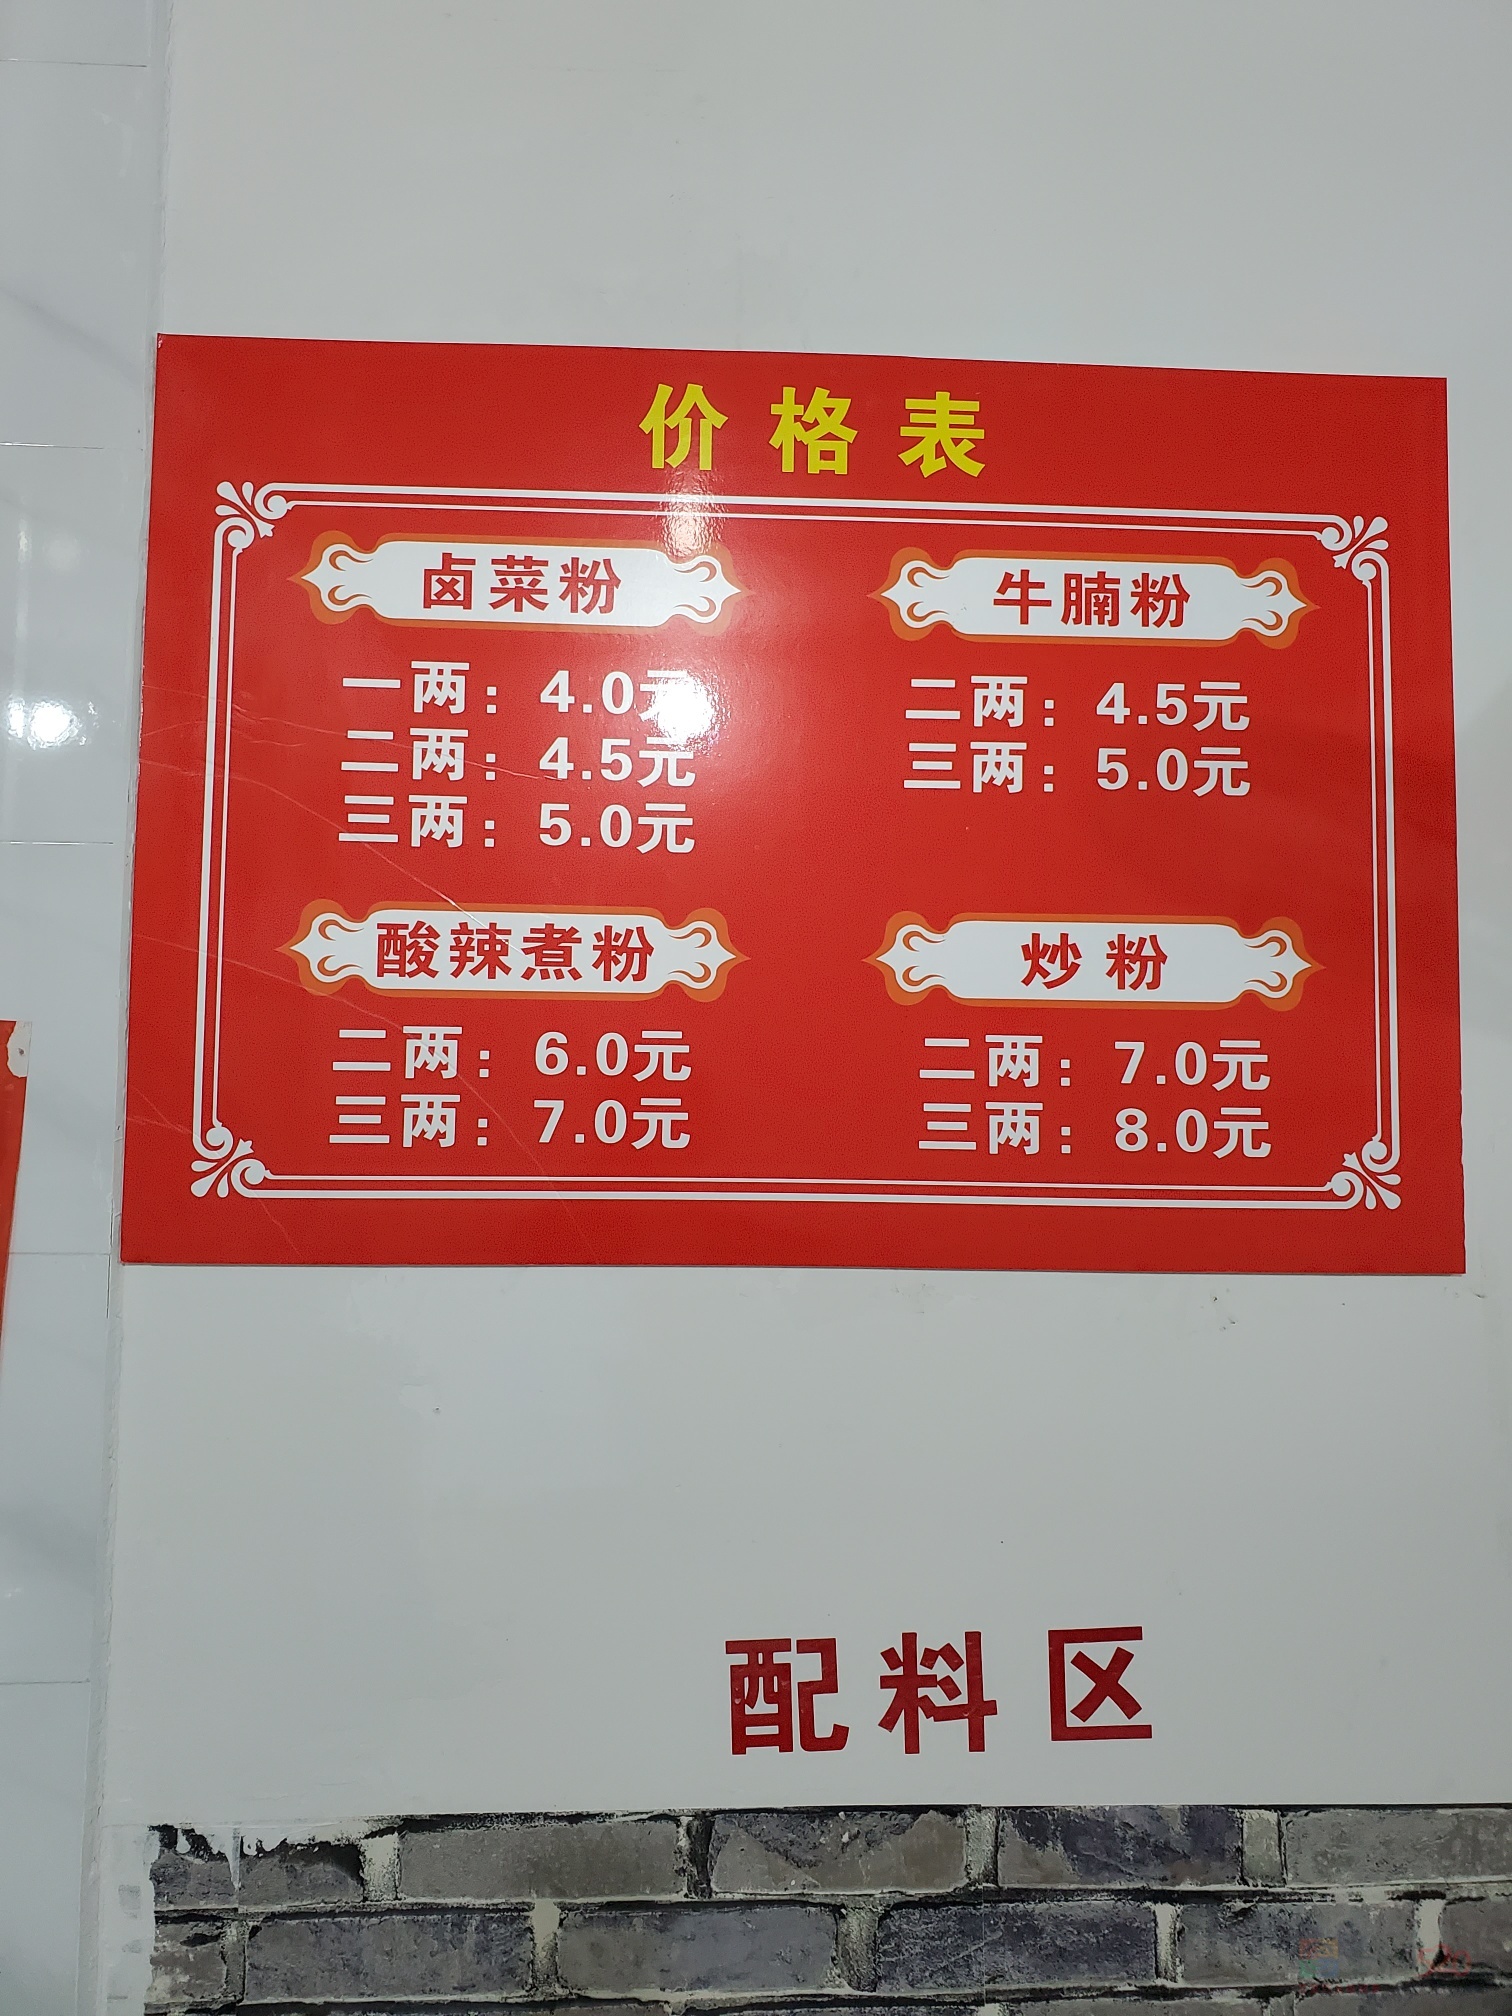 桂林的桂林米粉都开始降价了，恭城的什么时候降？44 / 作者:卡卡拉 / 帖子ID:289950